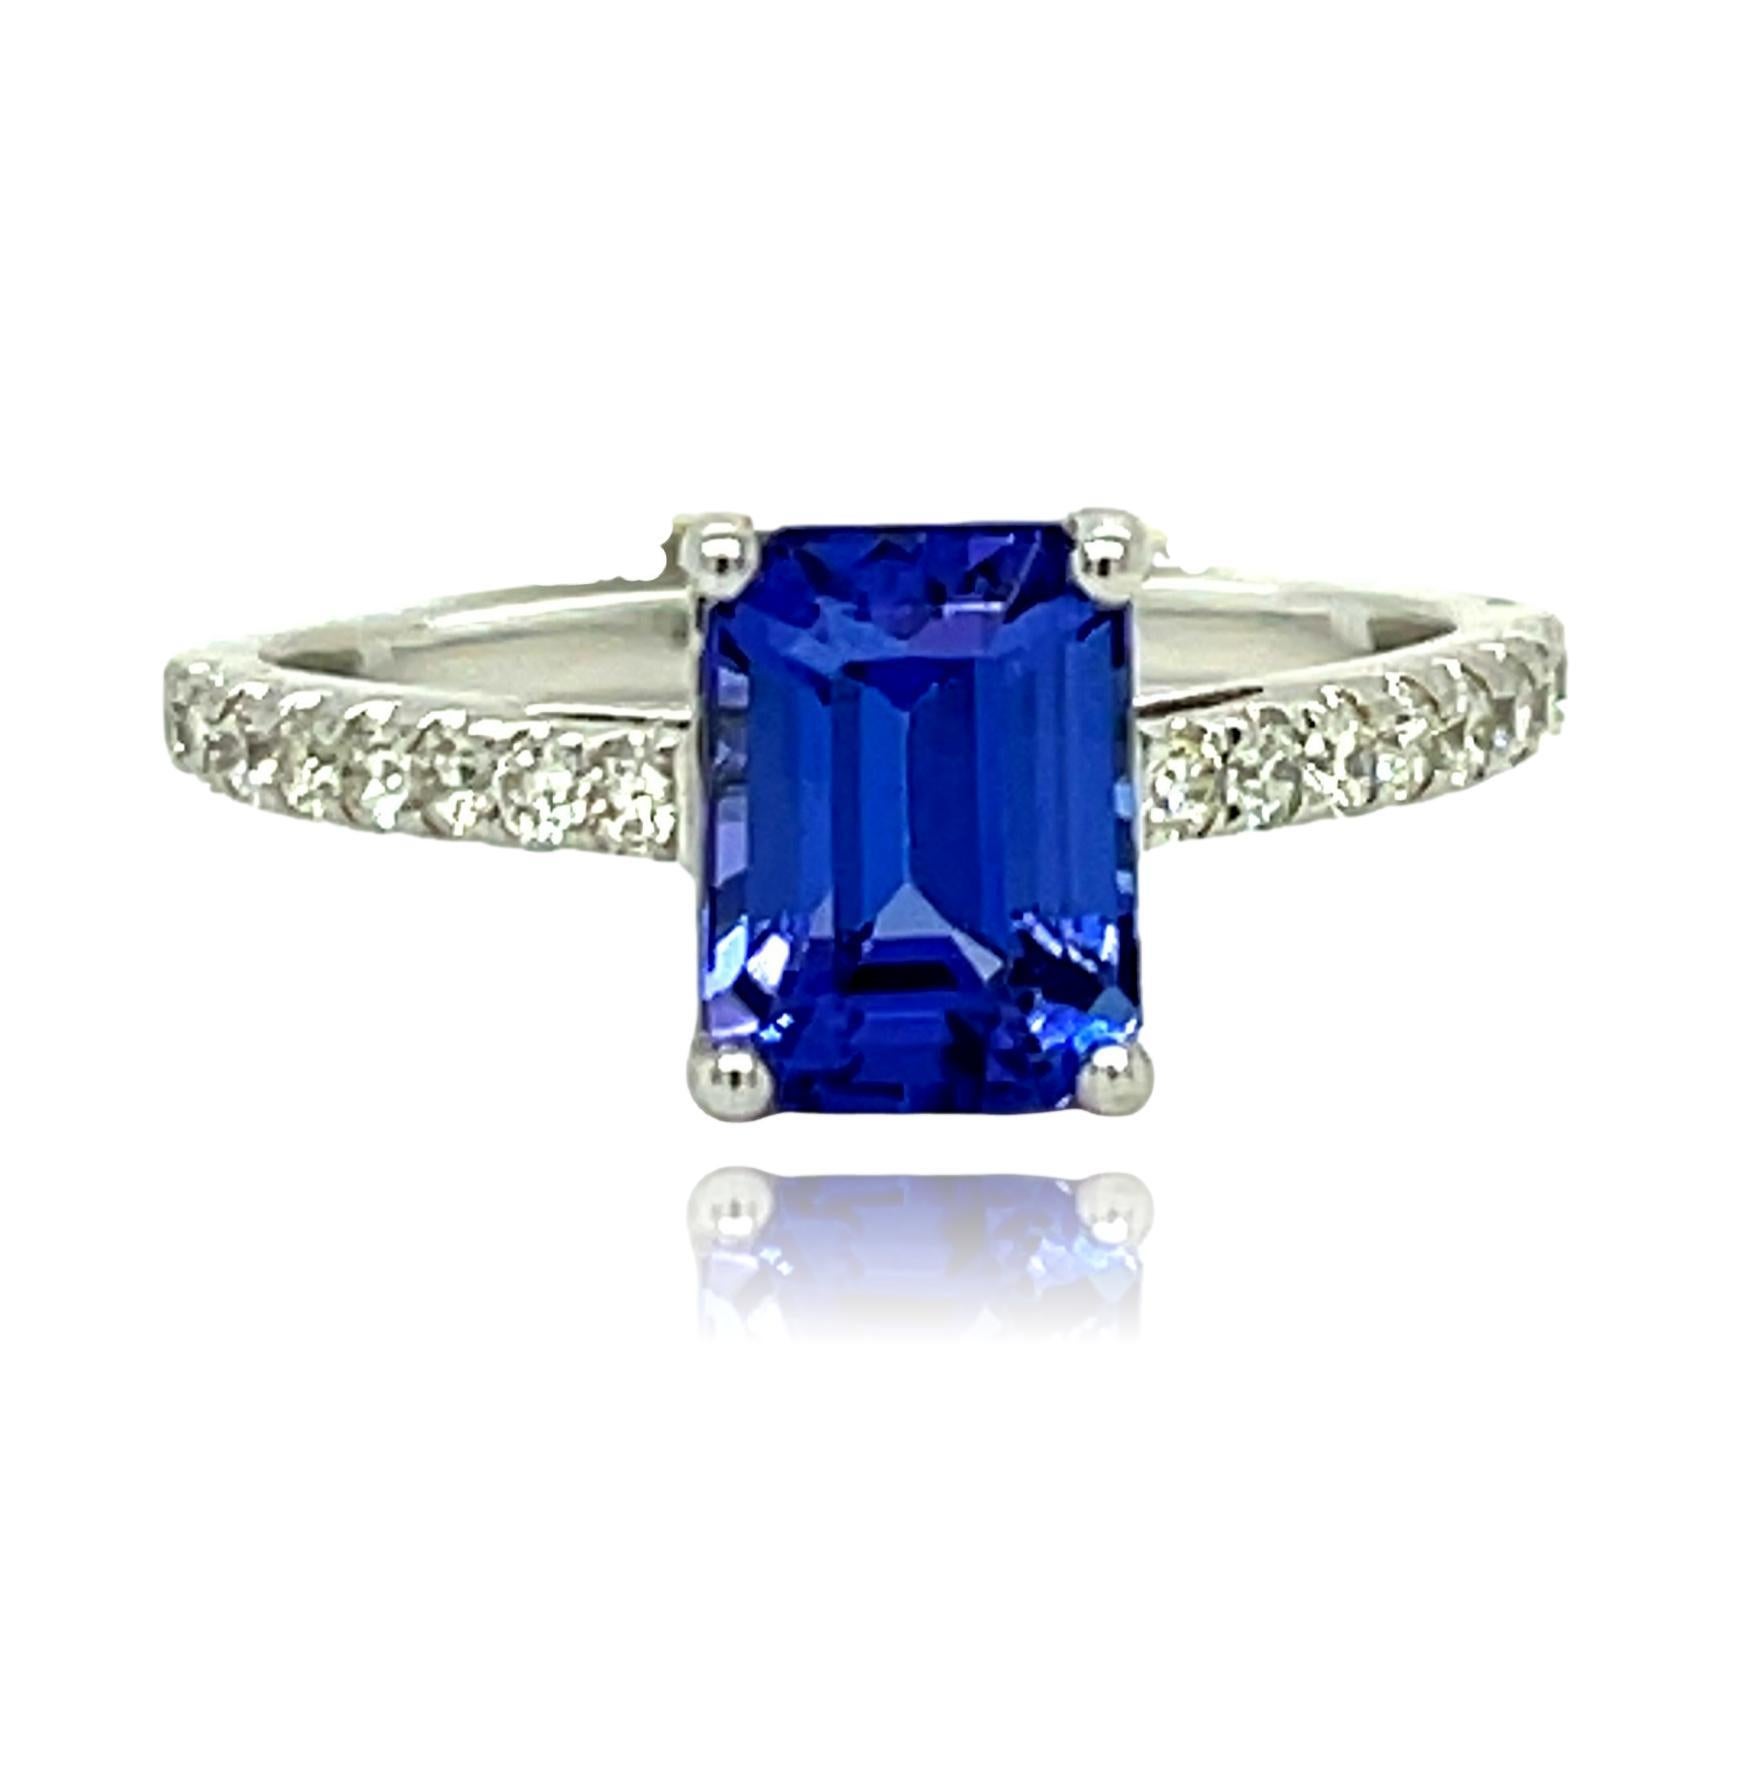 Dieser atemberaubende Ring hat einen königsblauen Smaragdschliff AAA Qualität Tanzanite mit Top-Qualität Diamanten auf dem Schaft und ist in 18K Weißgold gefasst. Er wird in einer schönen Schachtel geliefert und ist das perfekte Geschenk!

18KW:    